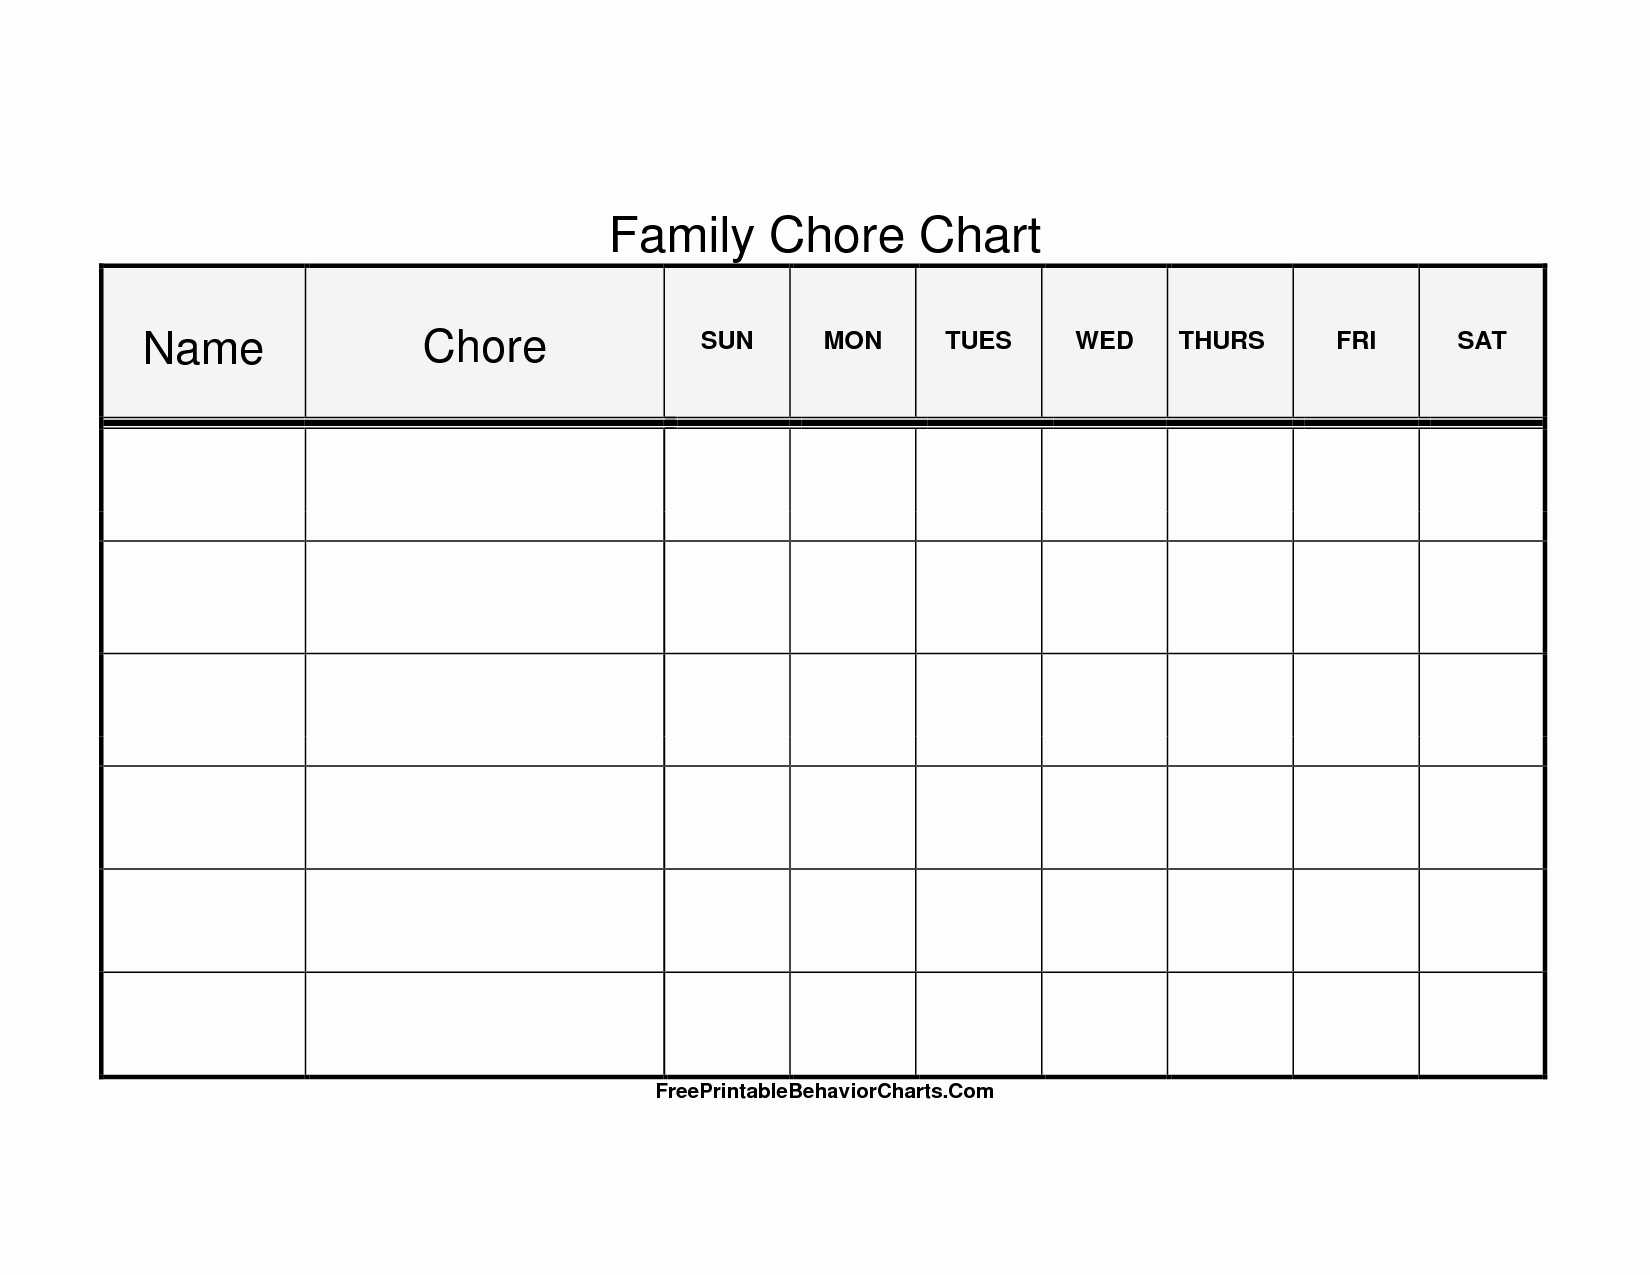 Family Chore Chart Templates Fresh Chore Family Job Chart